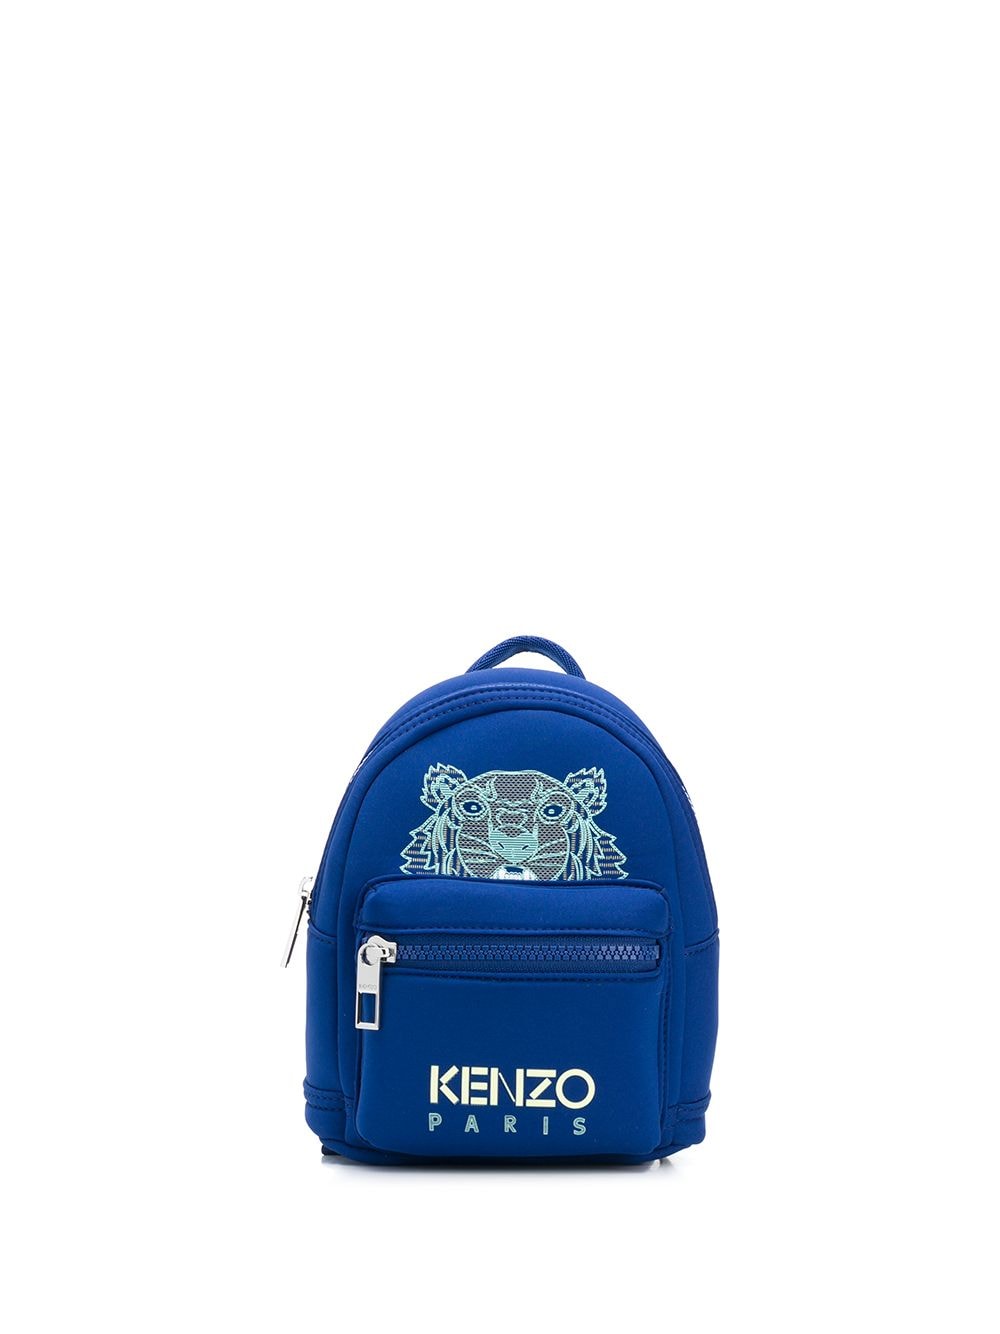 фото Kenzo маленький рюкзак с вышивкой tiger